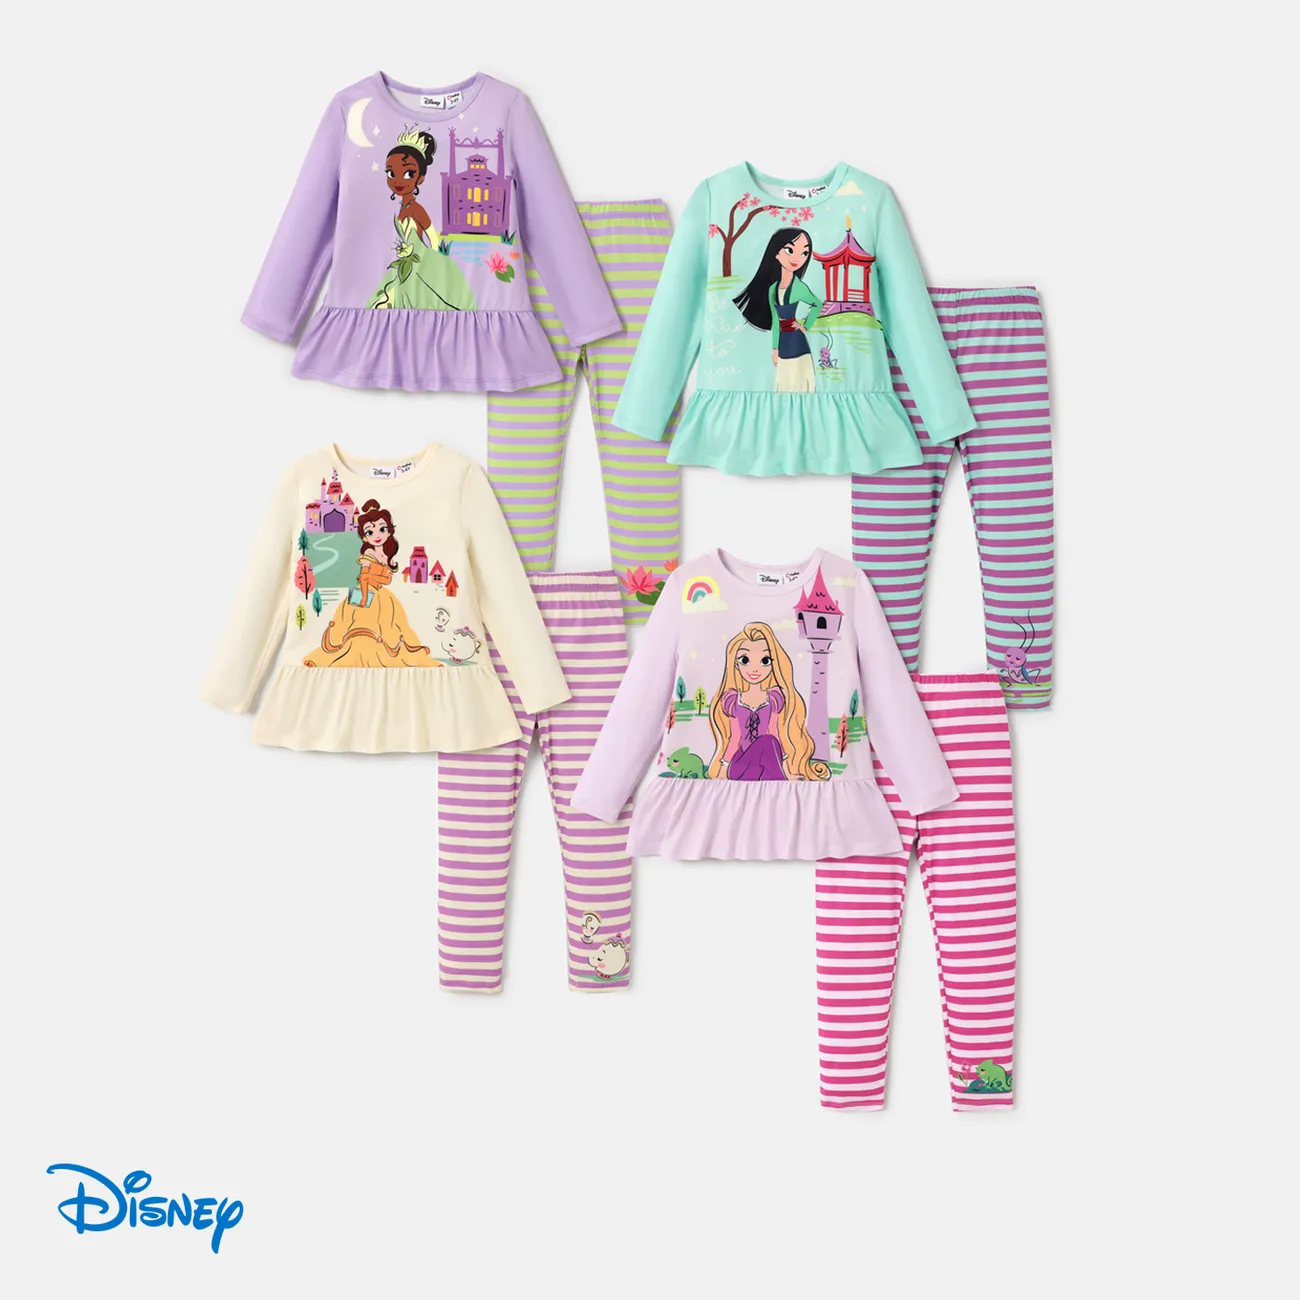 Disney Princess 2 unidades Criança Menina Extremidades franzidas Infantil conjuntos de camisetas Roxo Claro big image 1